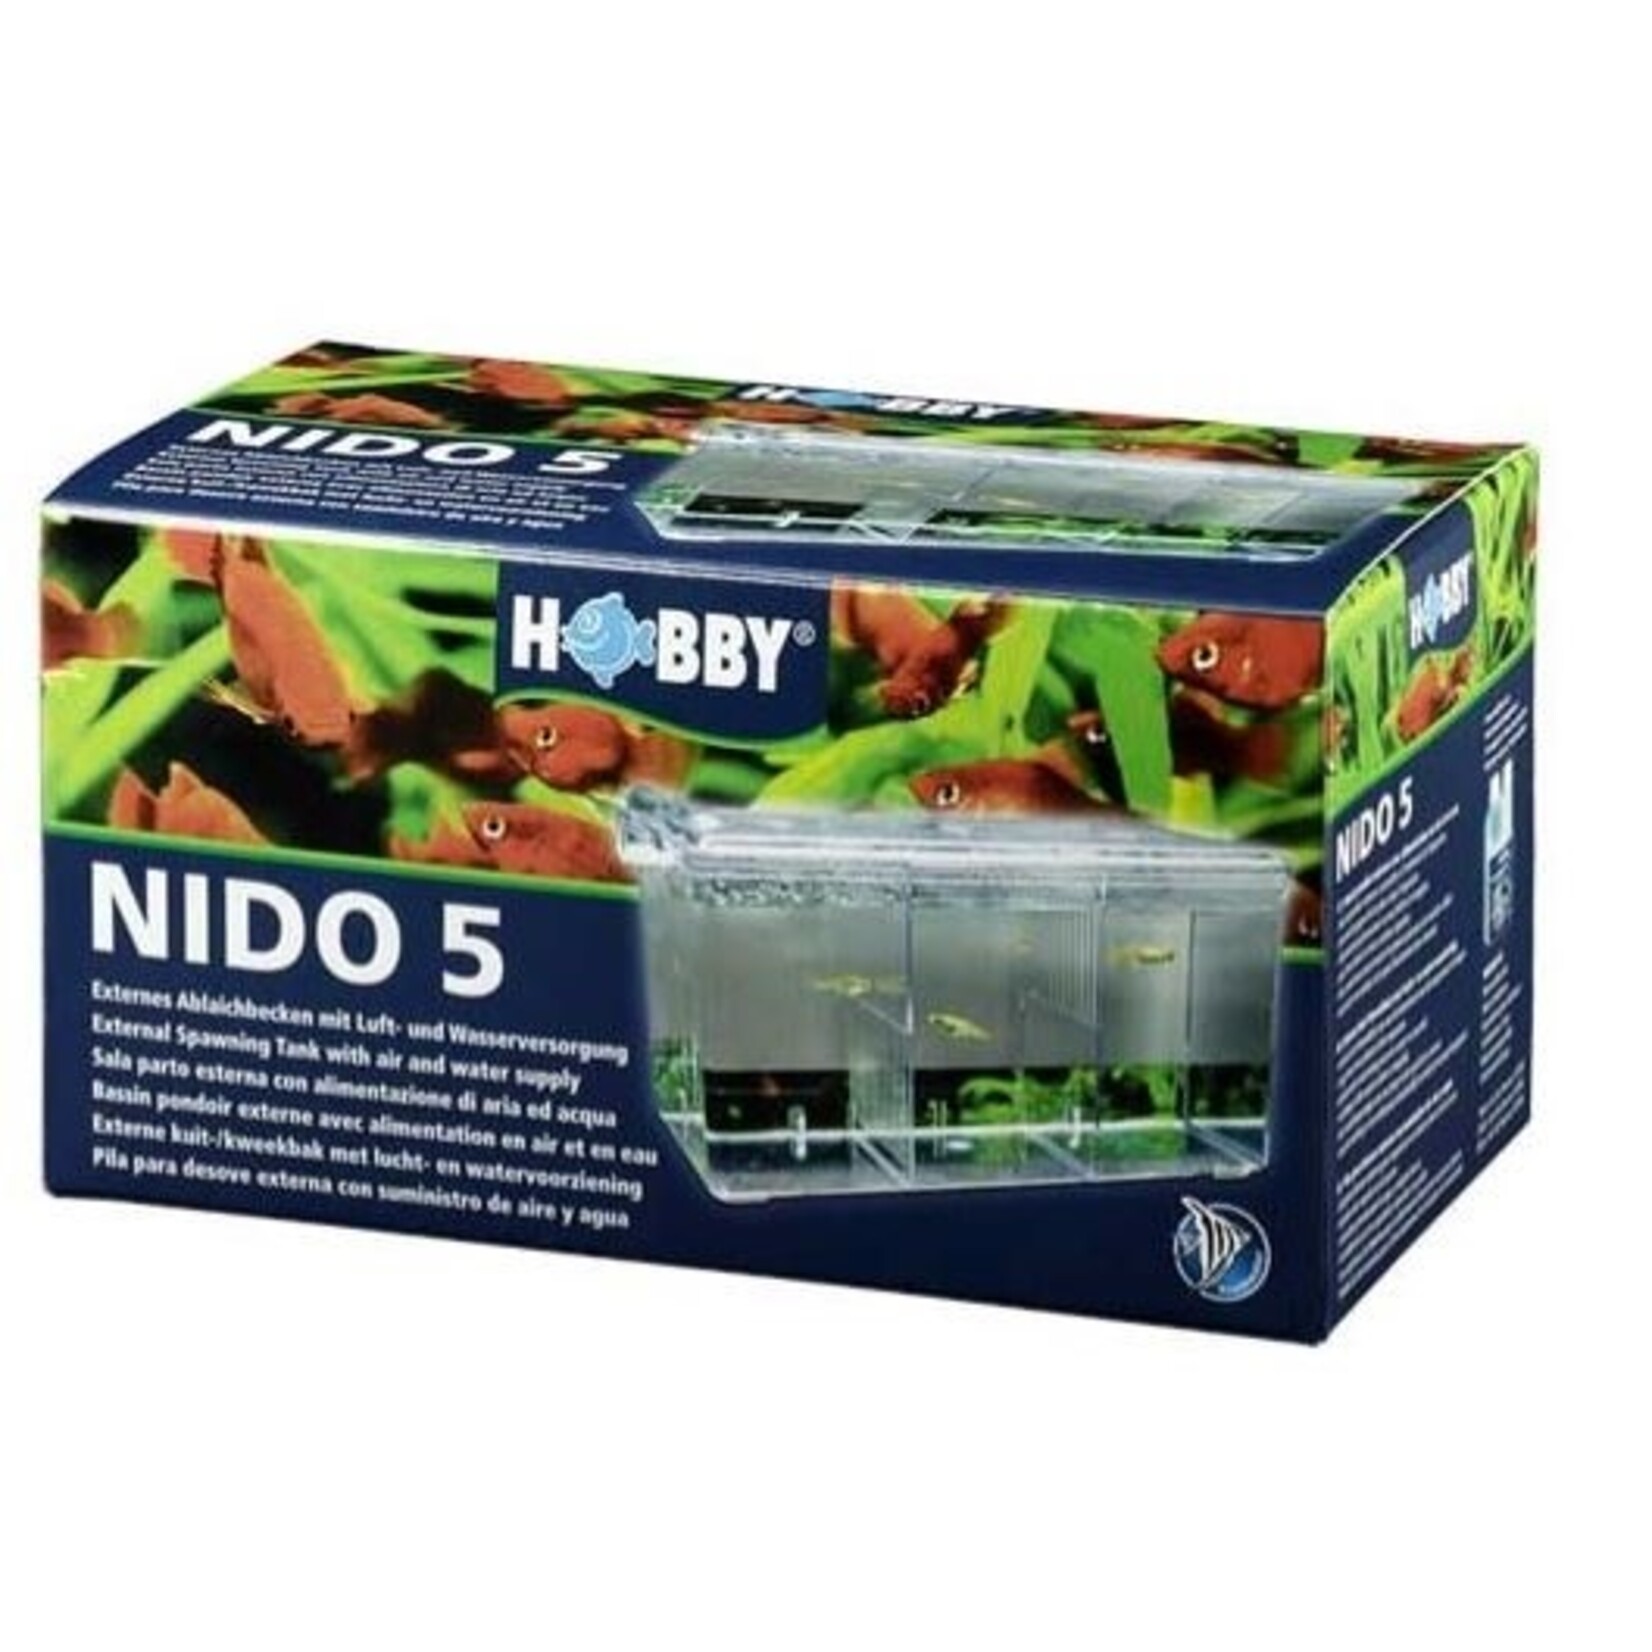 Hobby Nido 5 storage tray 26x14x13 cm